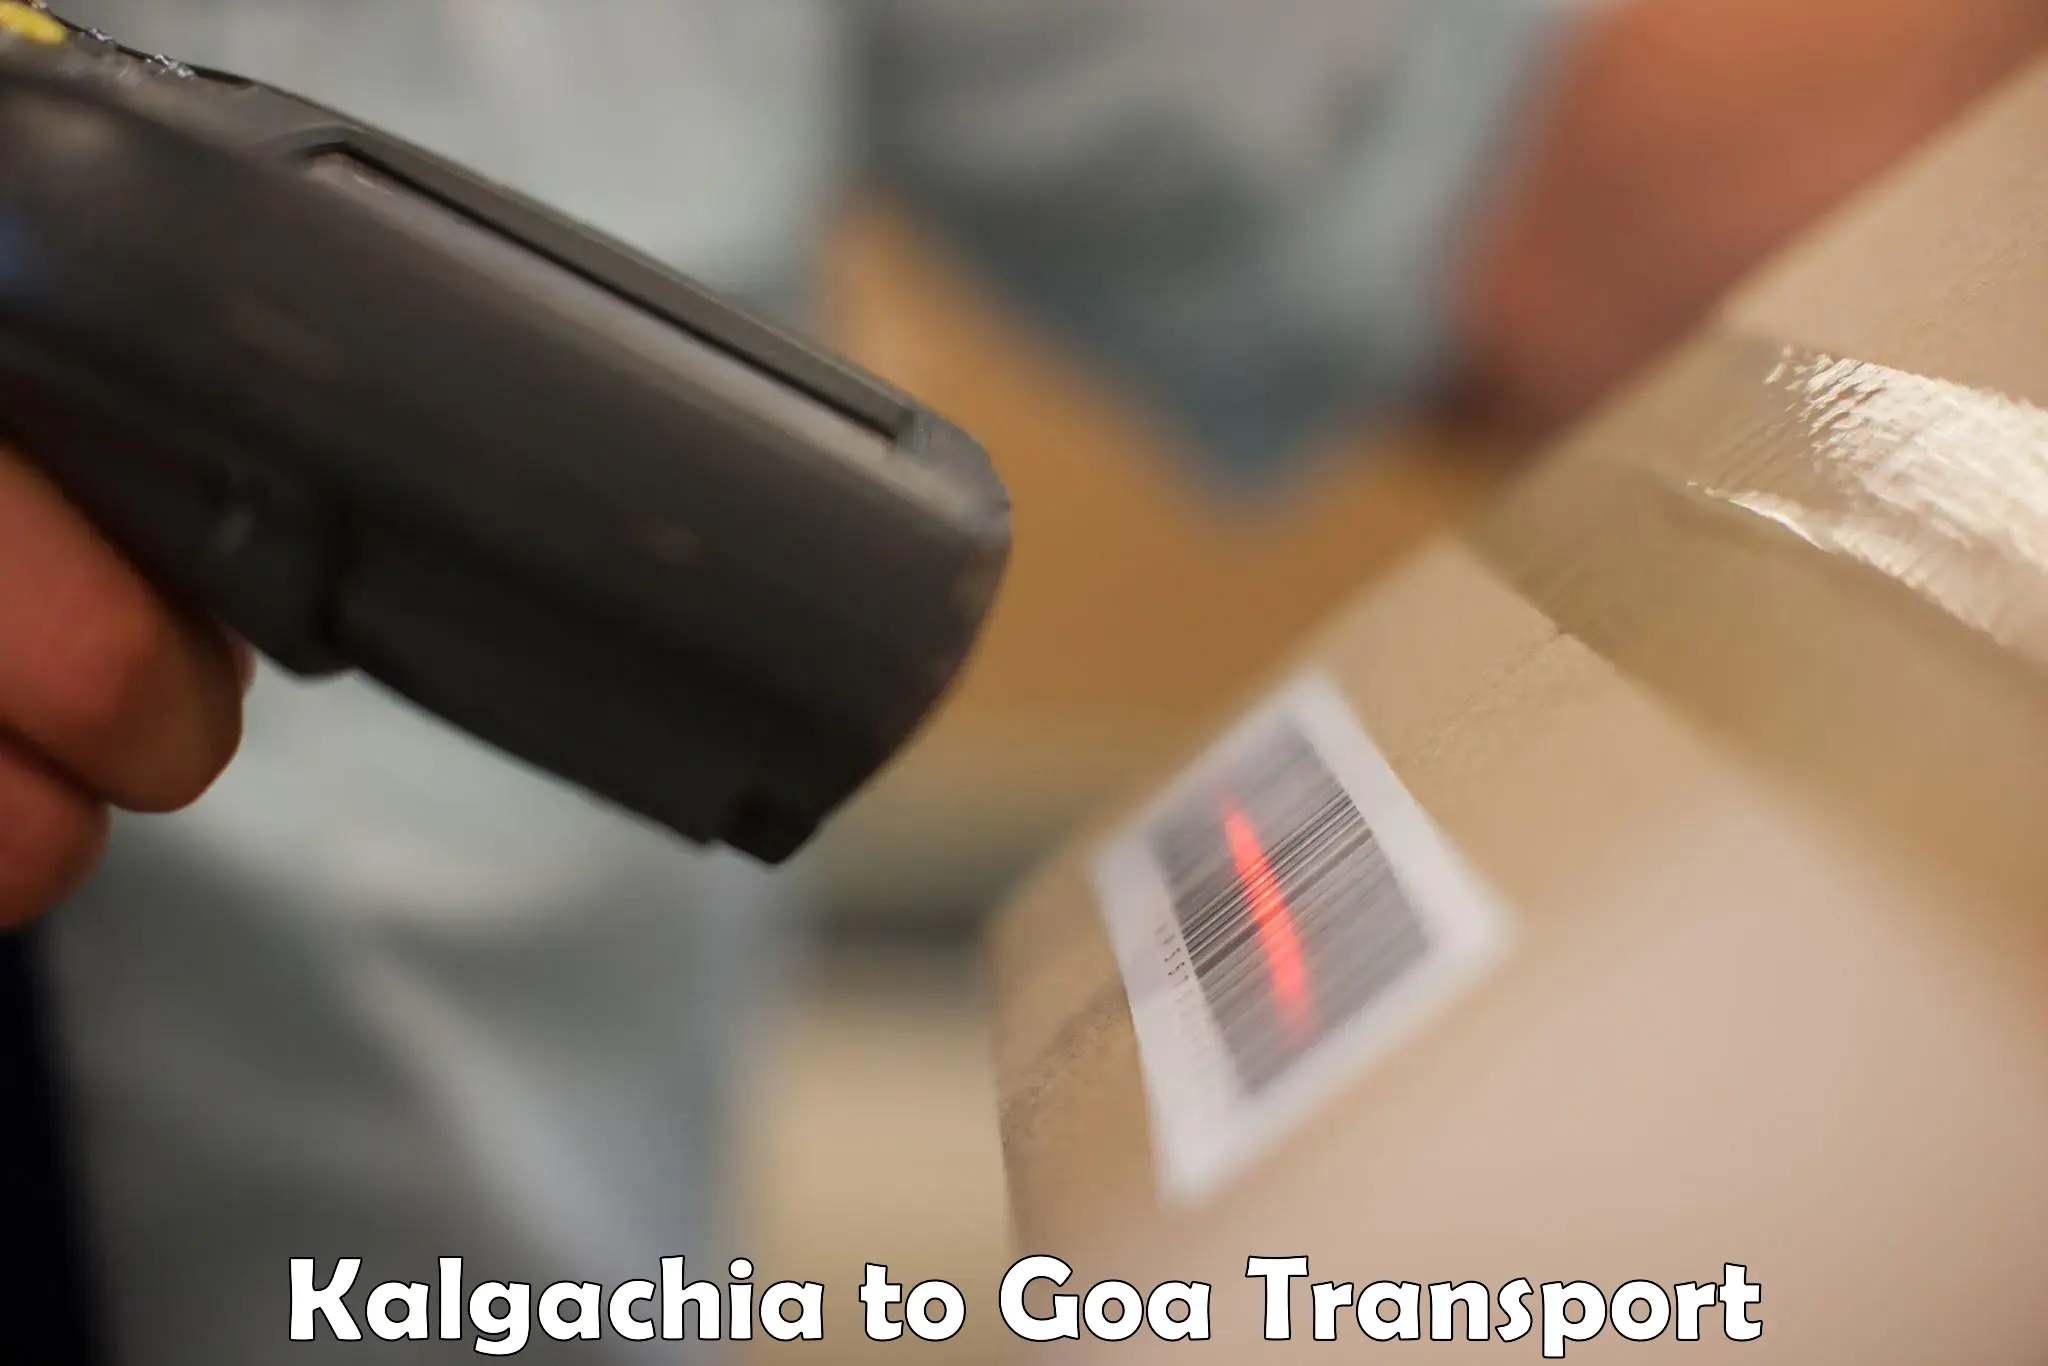 Daily transport service Kalgachia to Goa